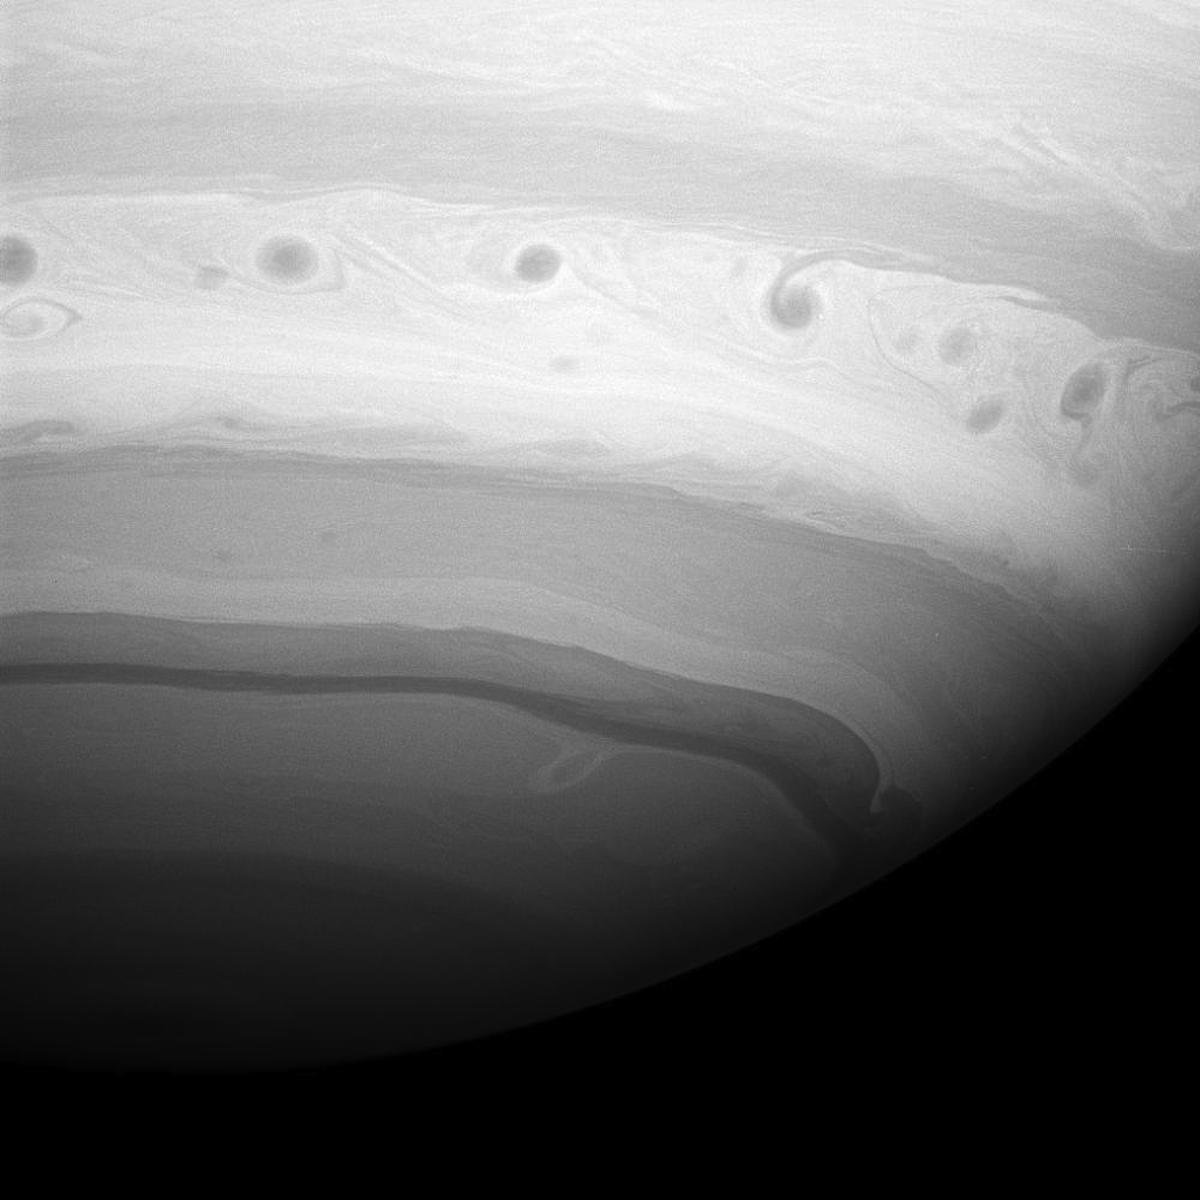 Жизнь на сатурне. Планета Сатурн Кассини. Сатурн снимки Кассини. Сатурн Титан Кассини. Снимки Сатурна высокого разрешения Кассини.